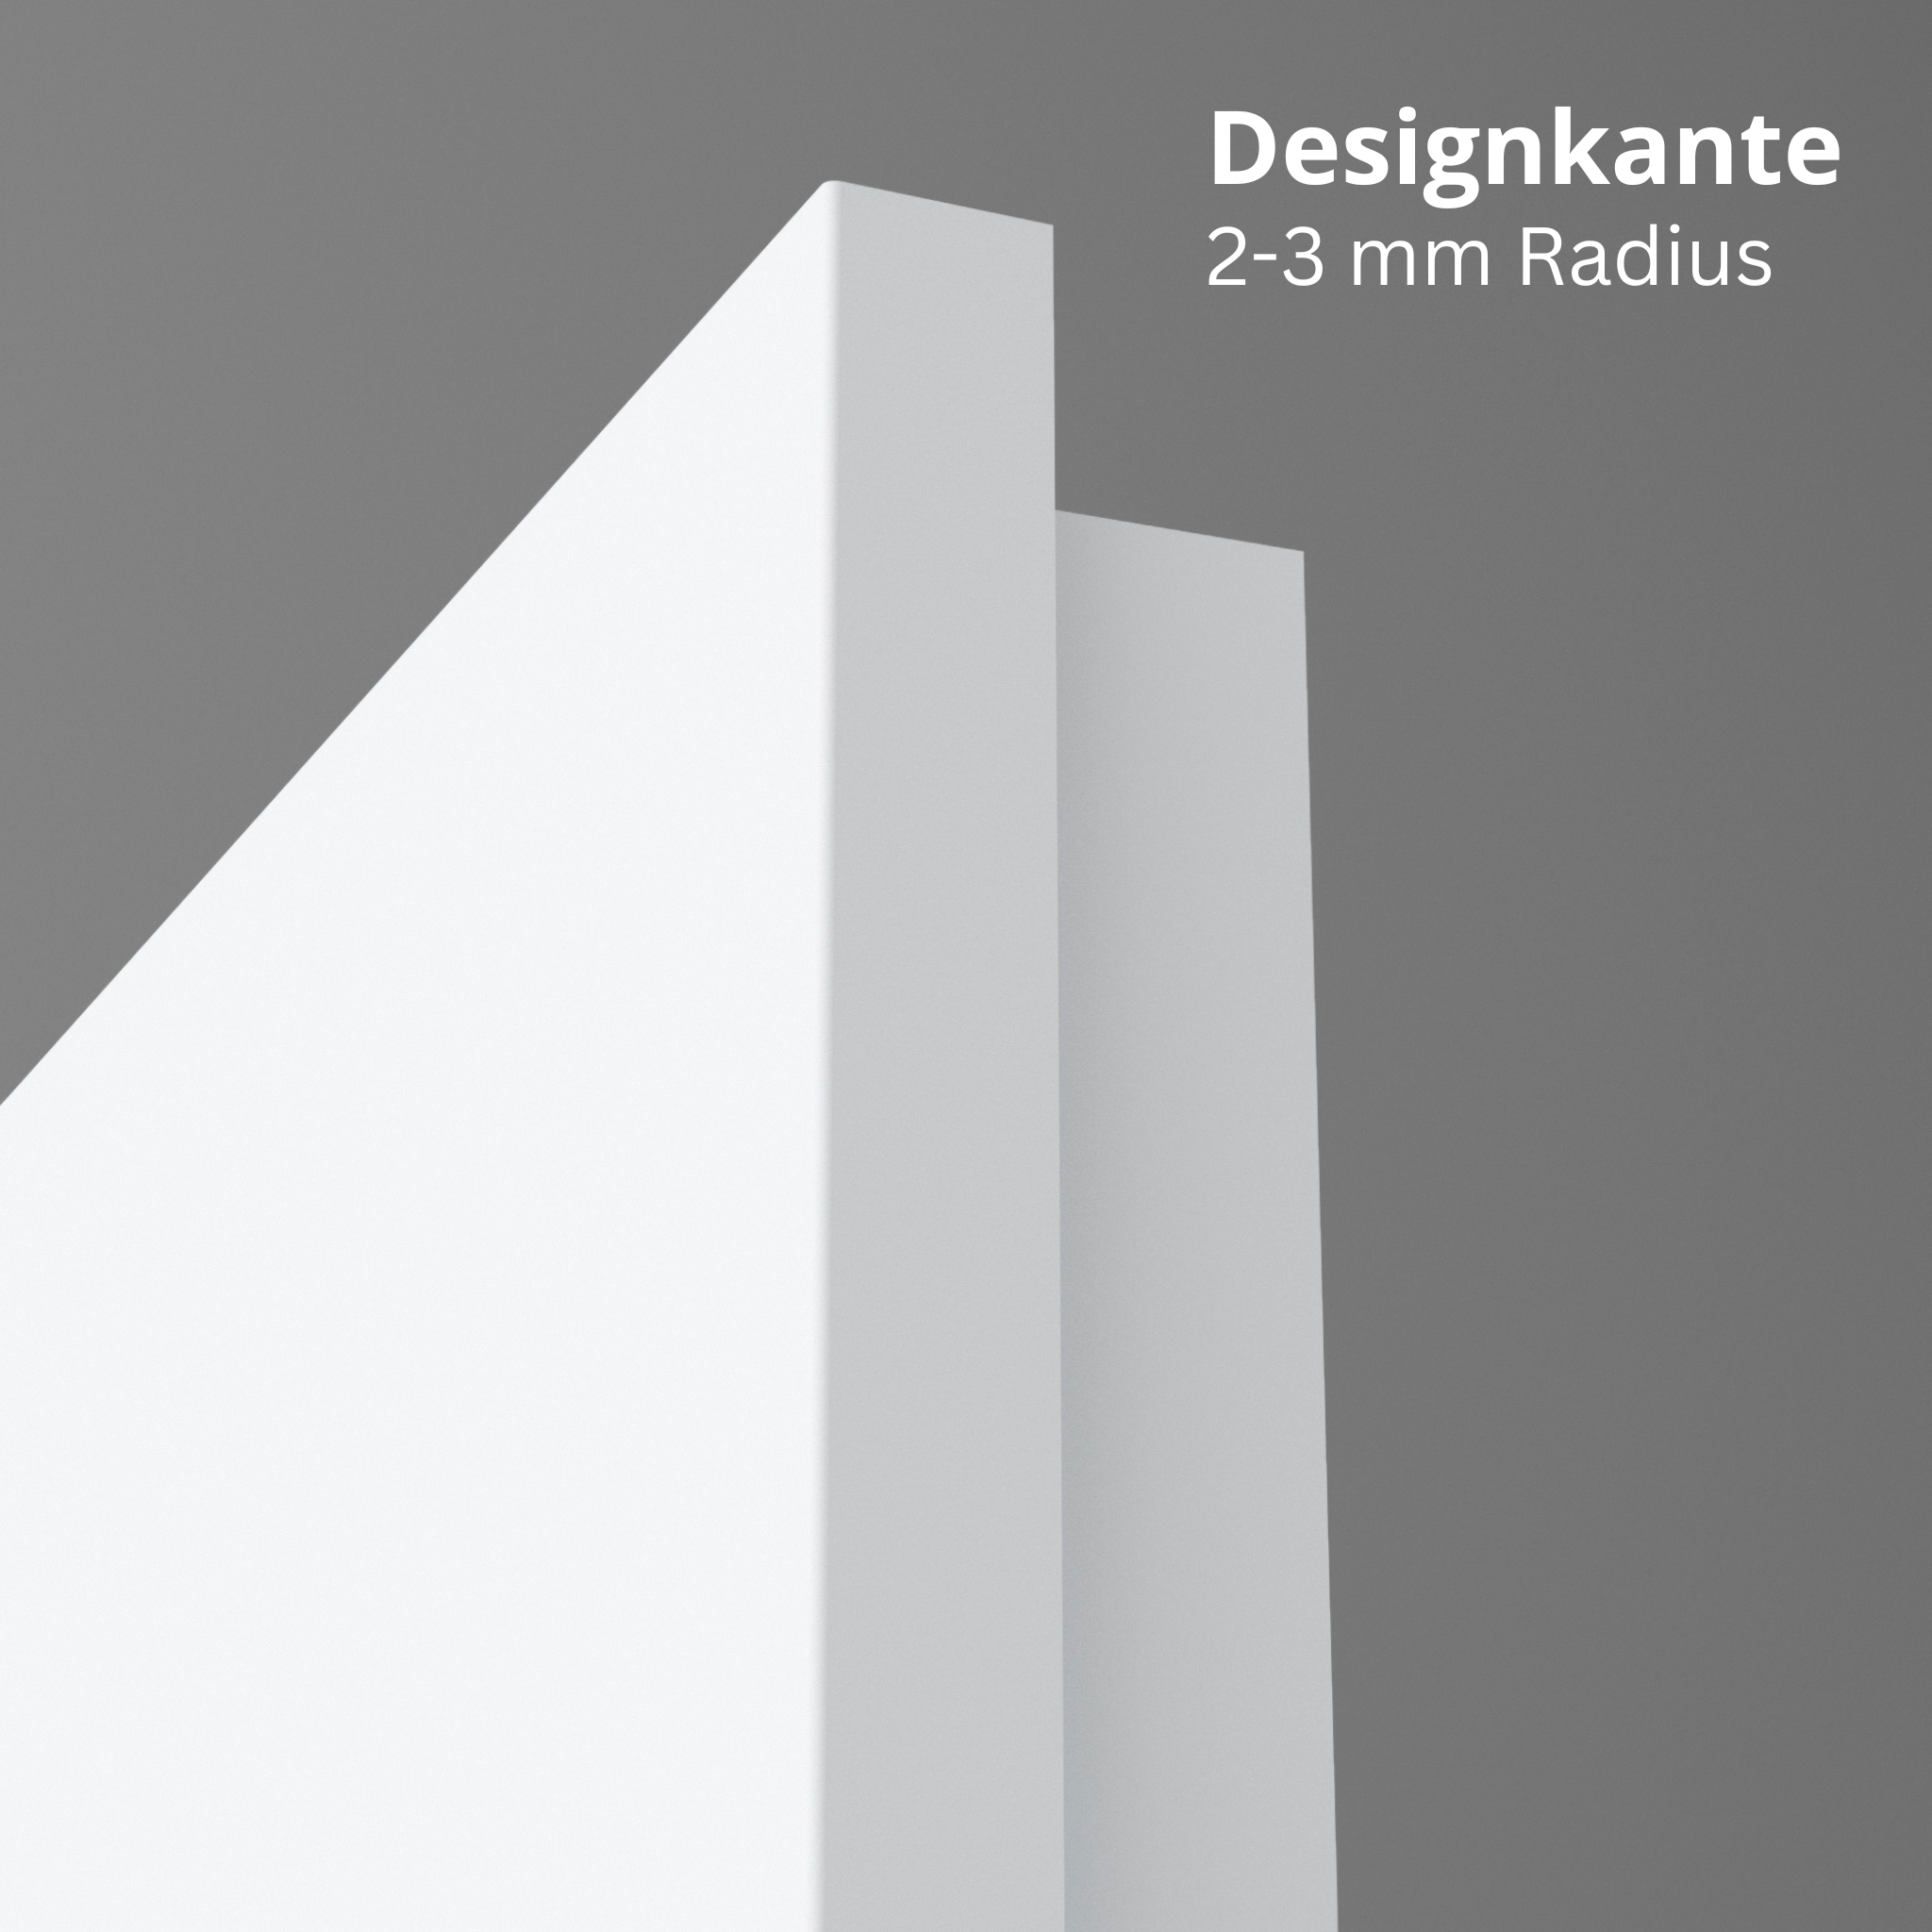 Wohnungseingangstür mit Zarge brillant-weiß Dekor glatt Designkante SK1 / KK3